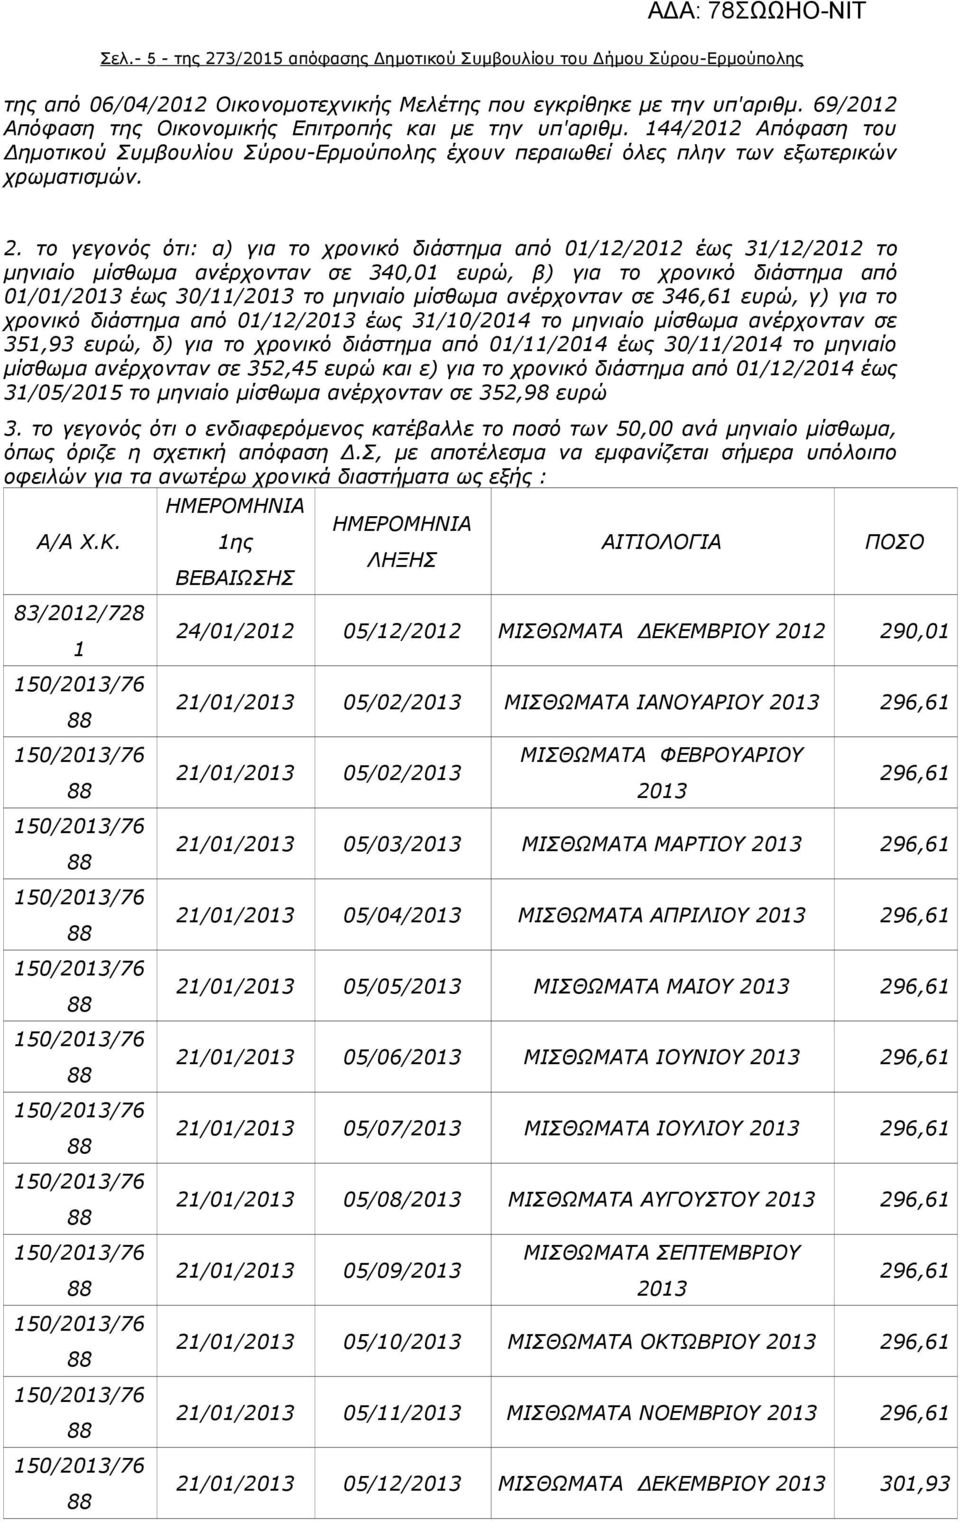 το γεγονός ότι: α) για το χρονικό διάστημα από 01/12/2012 έως 31/12/2012 το μηνιαίο μίσθωμα ανέρχονταν σε 340,01 ευρώ, β) για το χρονικό διάστημα από 01/01/2013 έως 30/11/2013 το μηνιαίο μίσθωμα